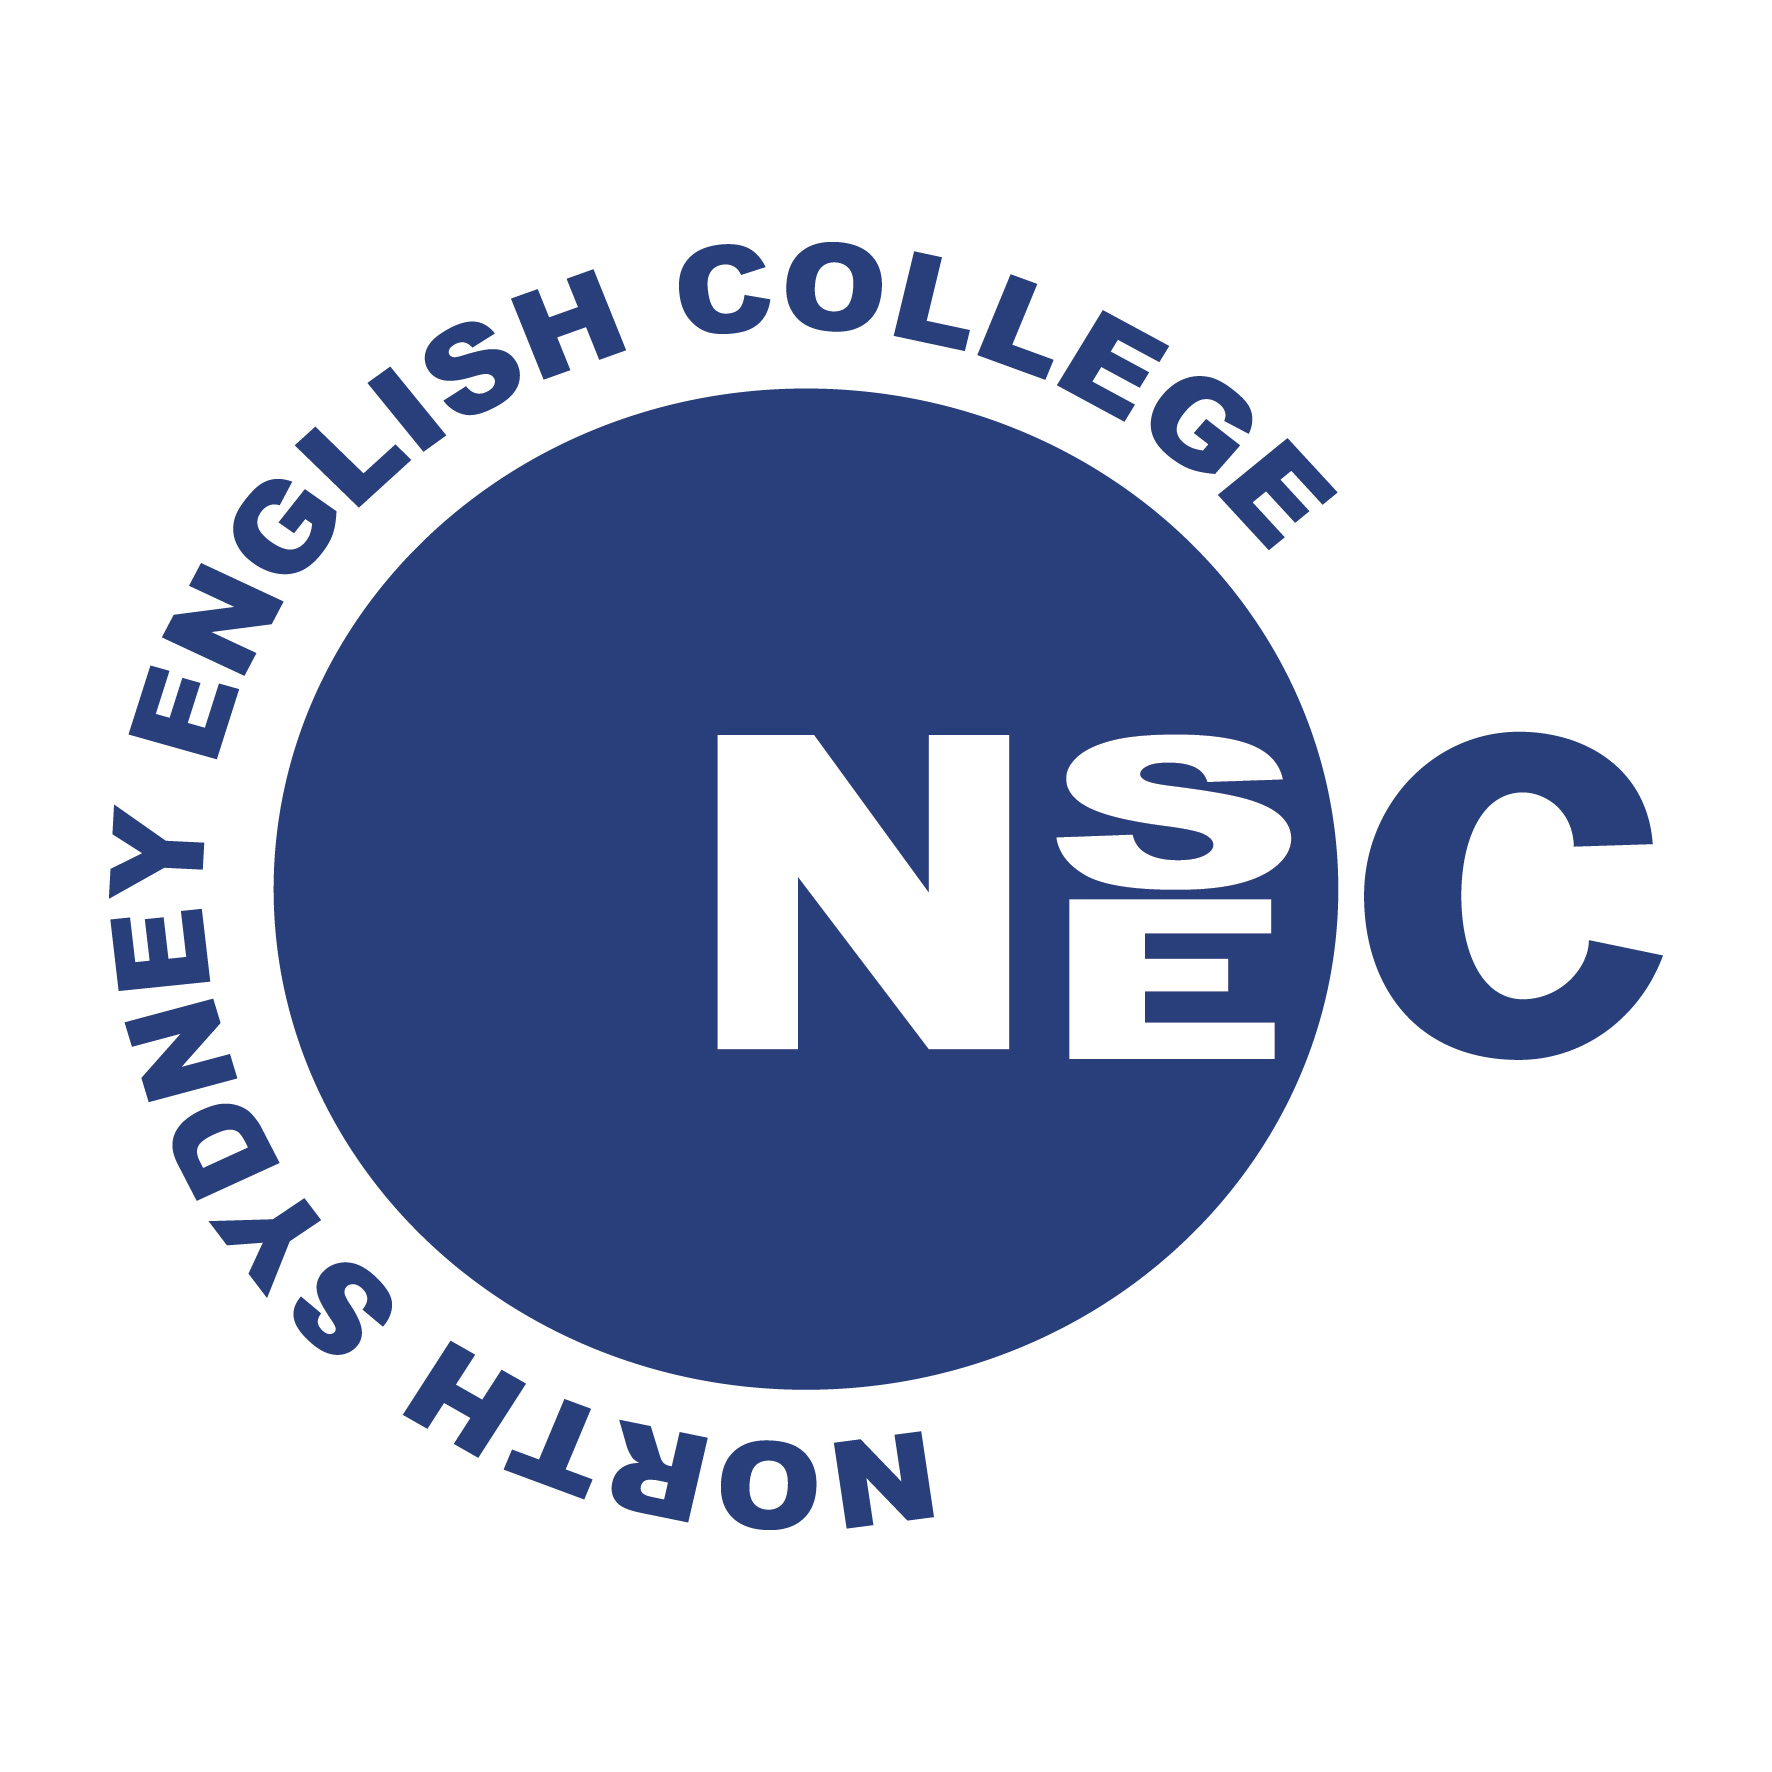 North Sydney English College – Sydney